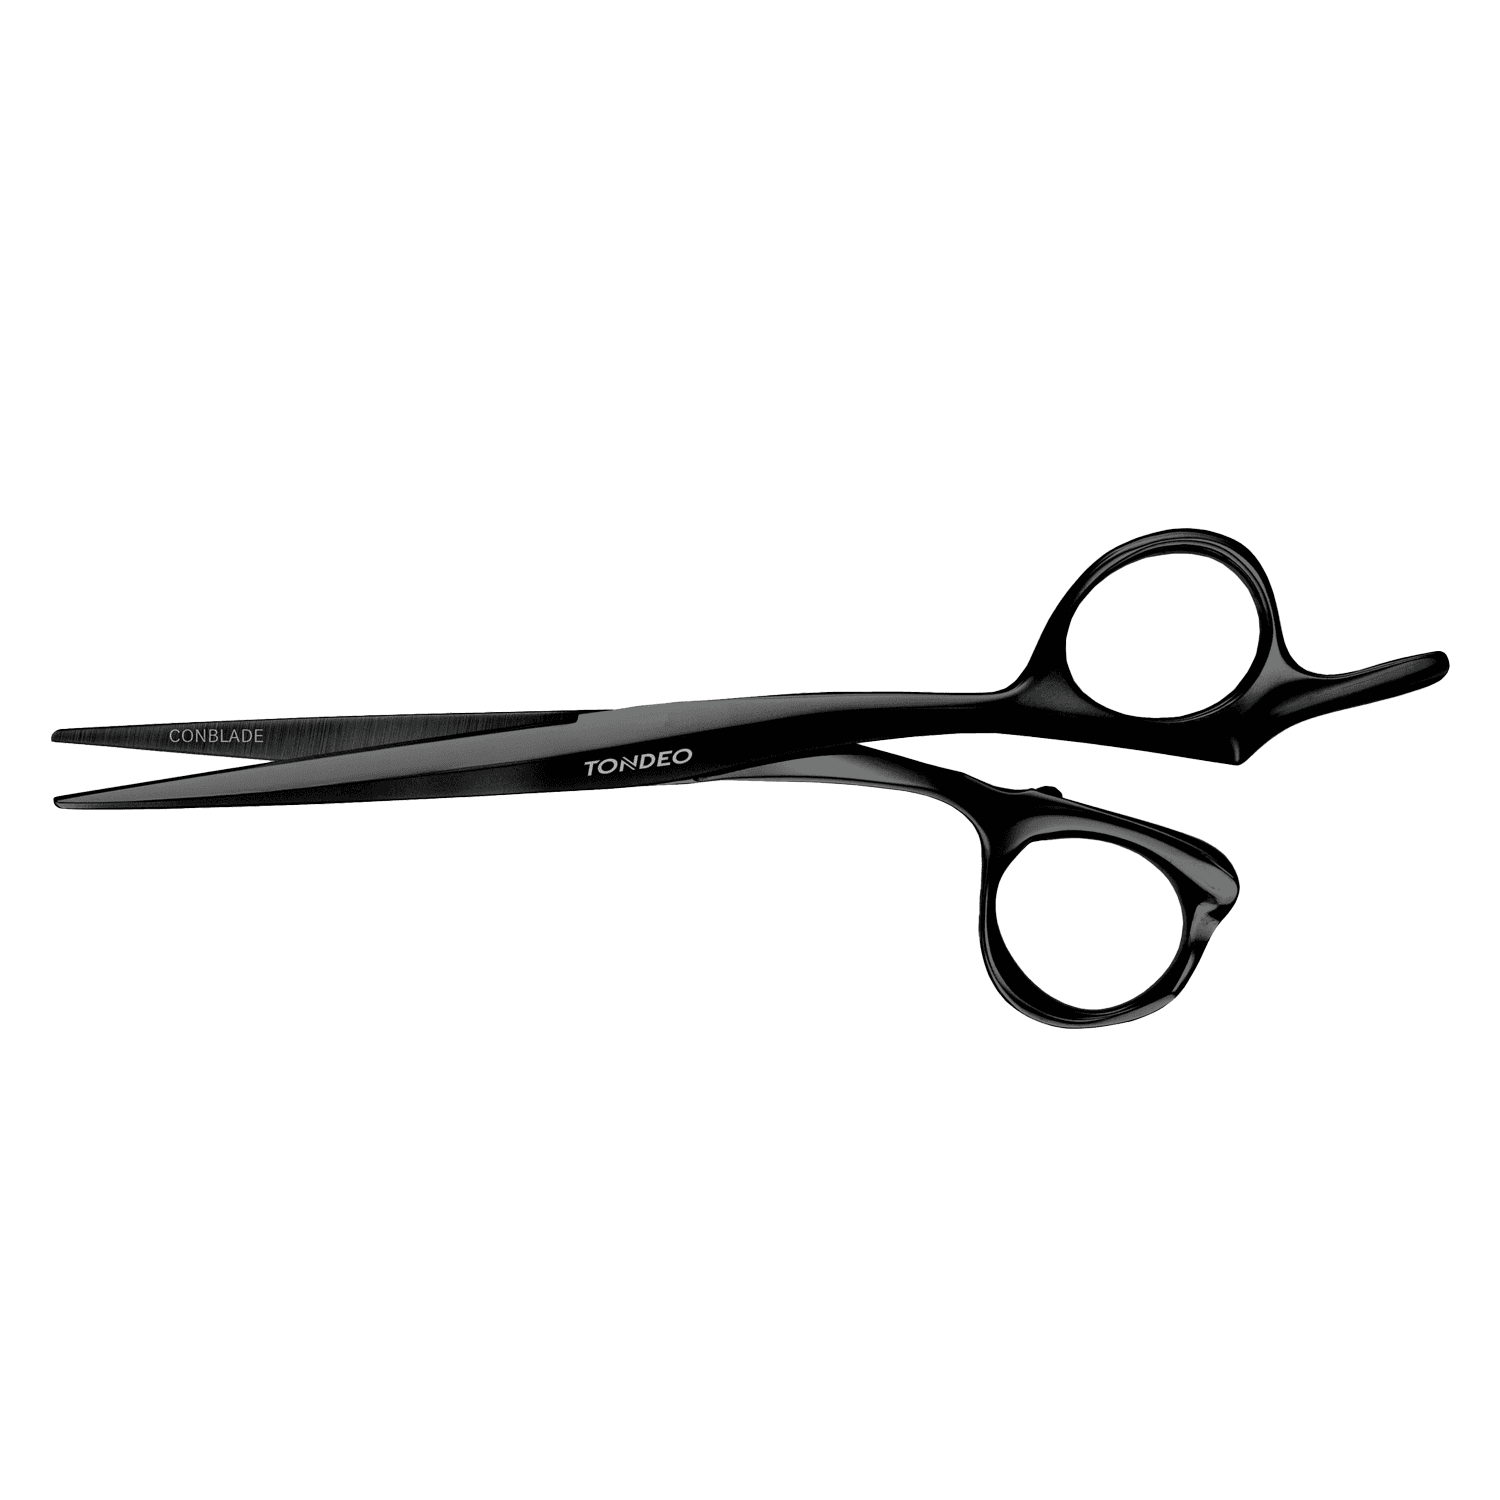 Tondeo Scissors - Zentao Black Offset Scissors 6.5" CONBLADE